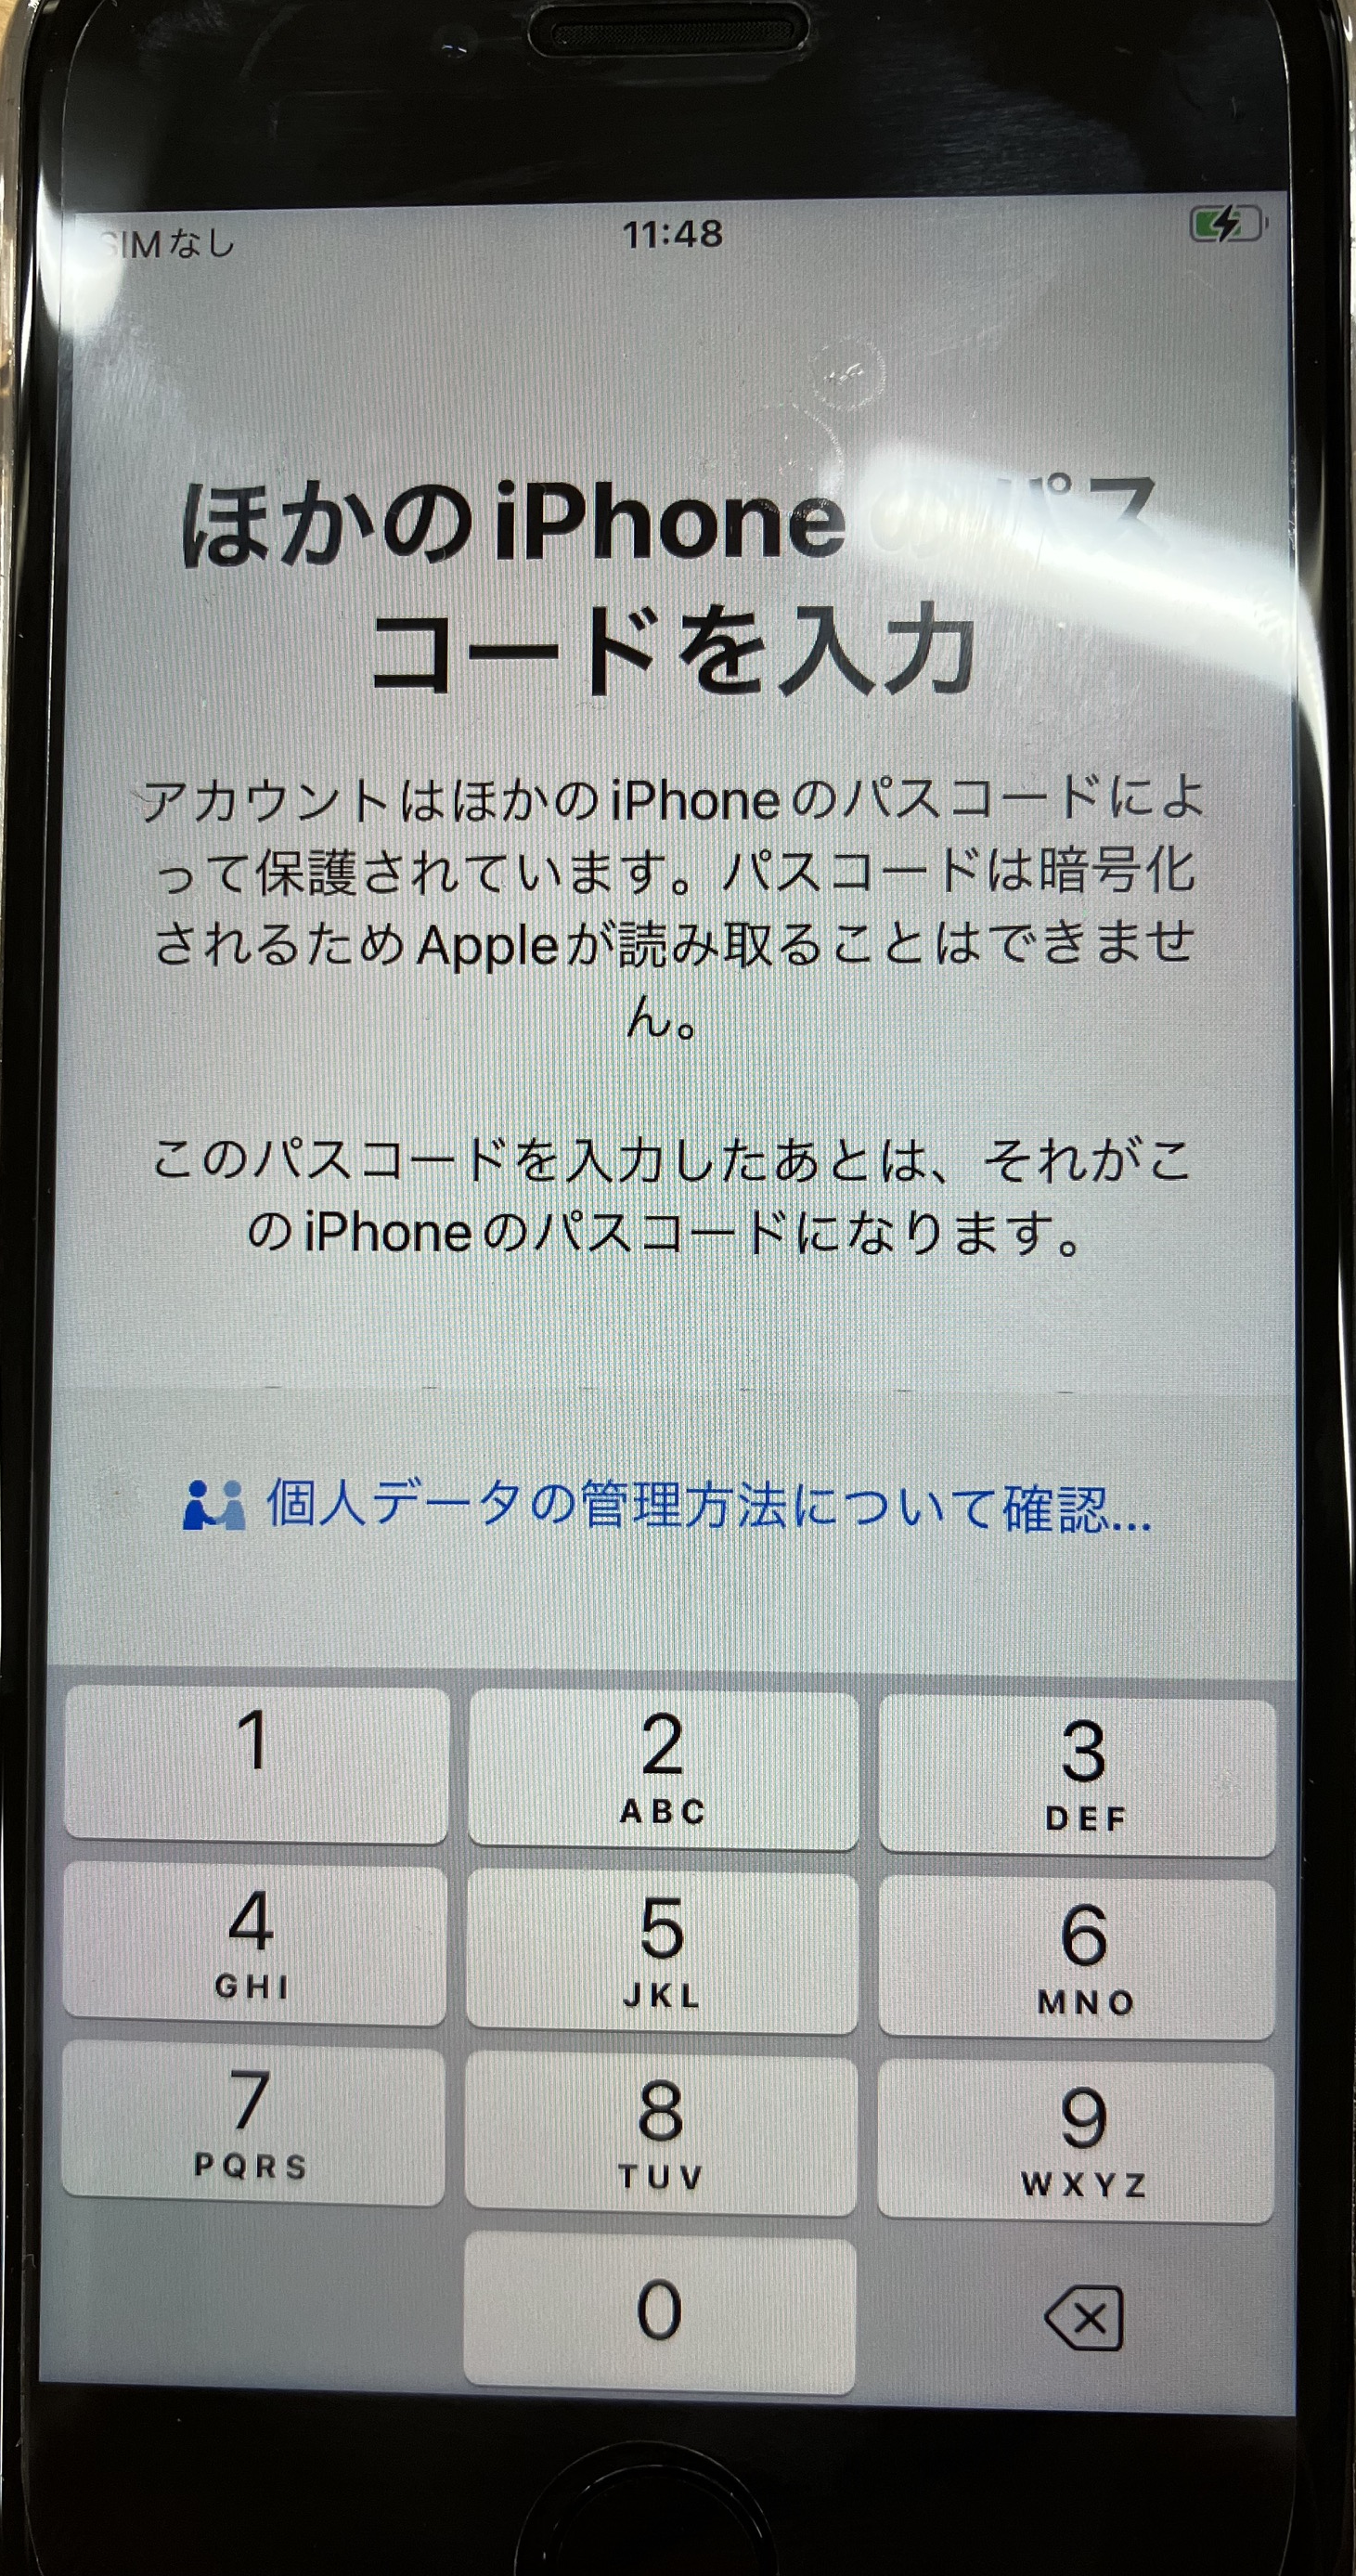 iPhone:新しいiPhoneで「ほかのiPhoneパスコードを入力」と表示されるので、古いiPhoneのパスコードを入力